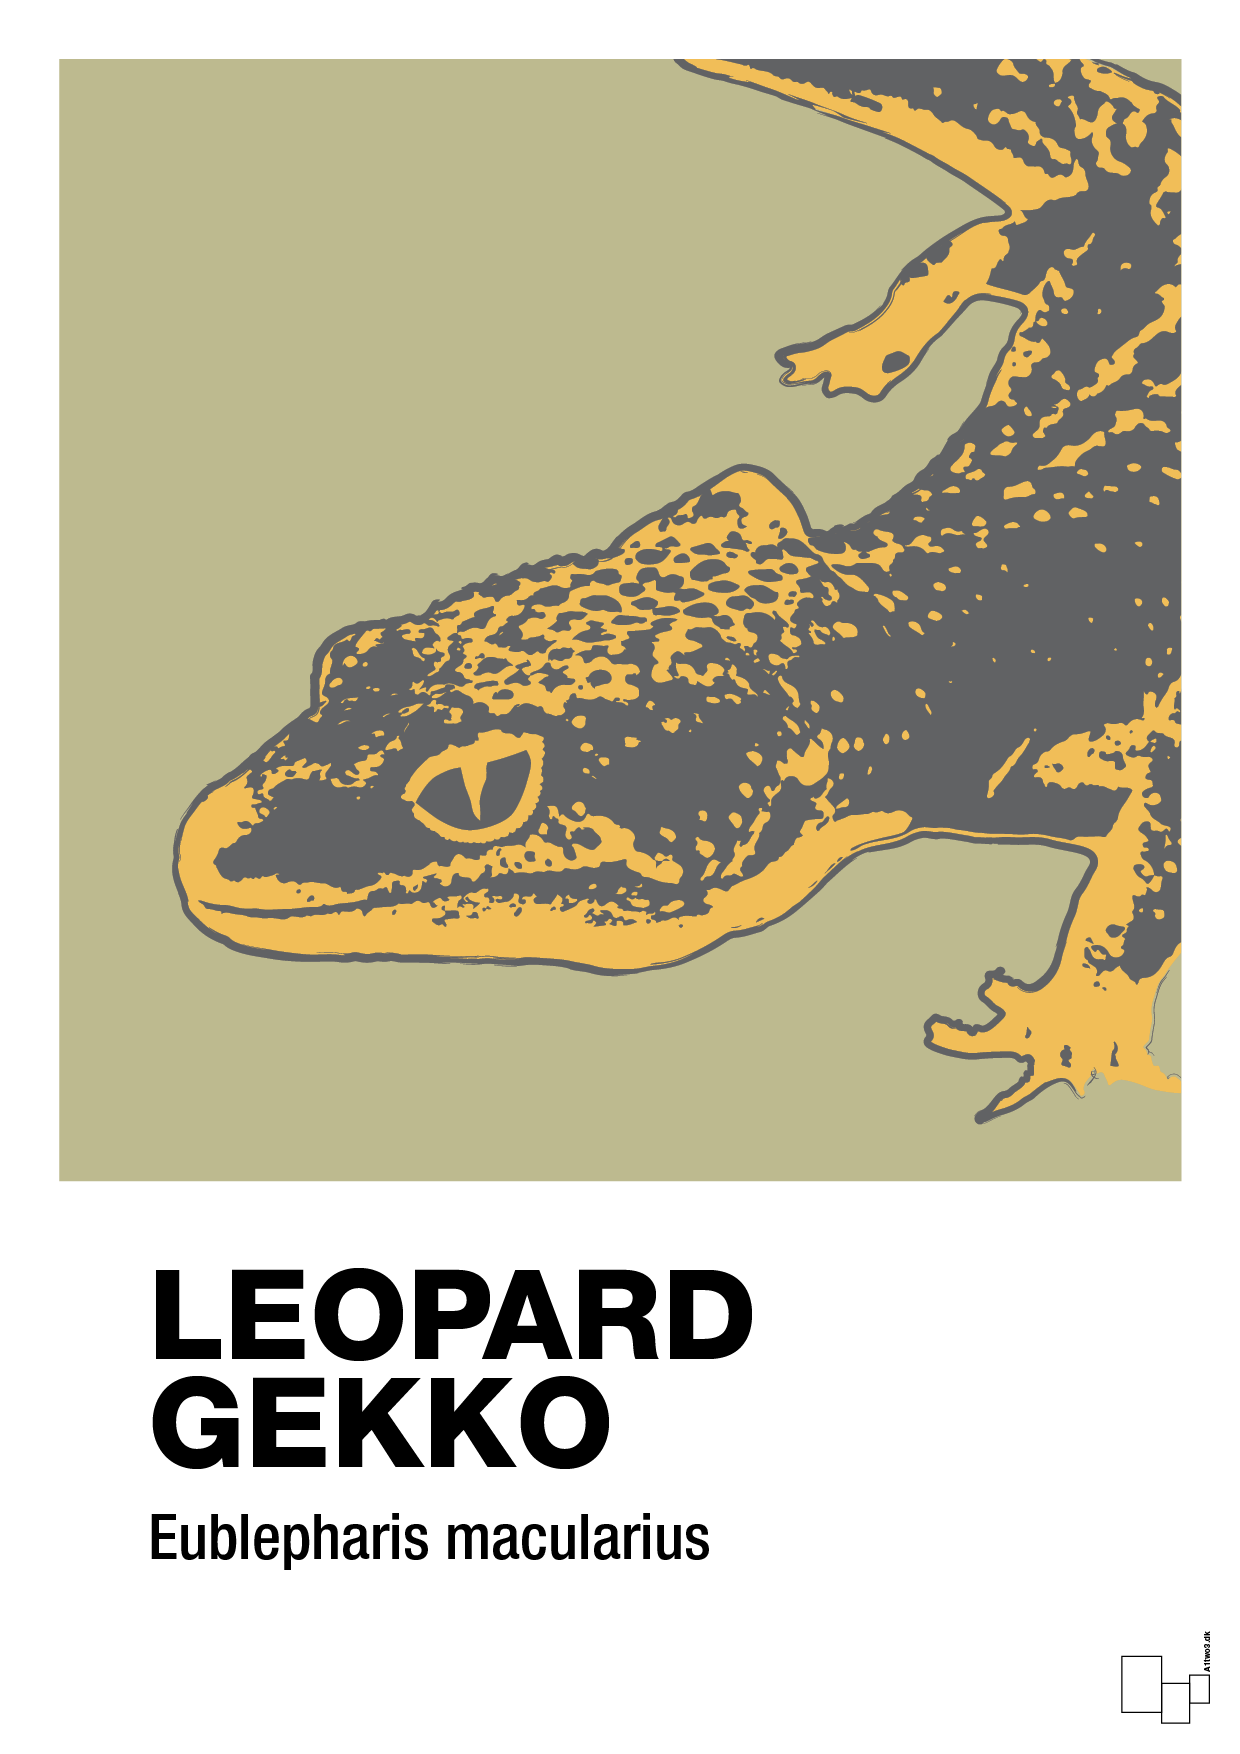 leopard gekko - Plakat med Videnskab i Back to Nature